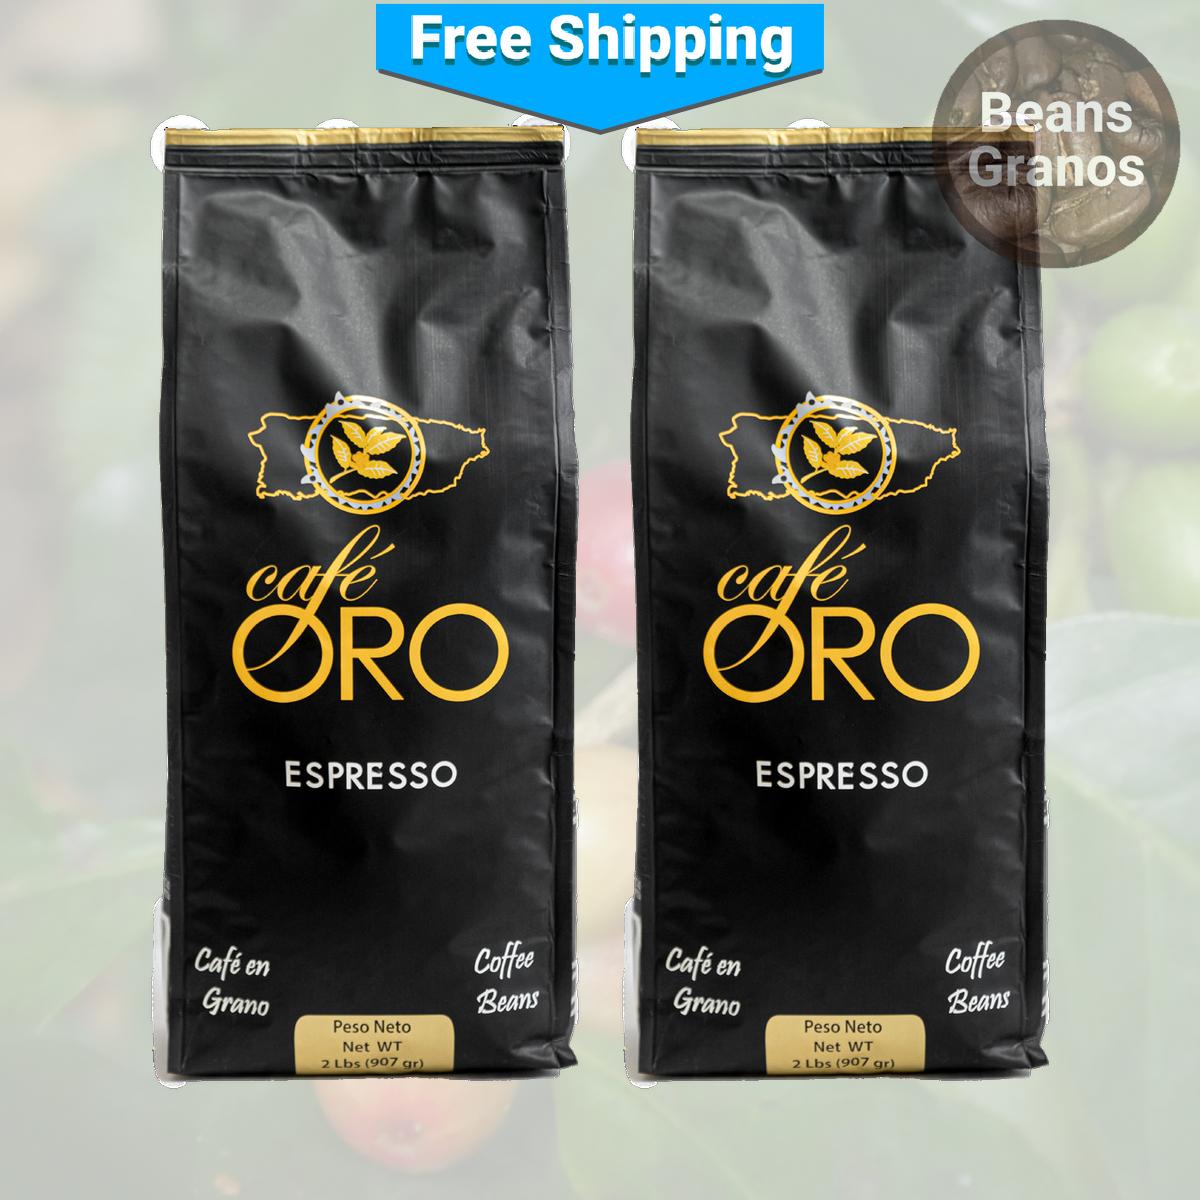 Café Oro Espresso Coffee Beans